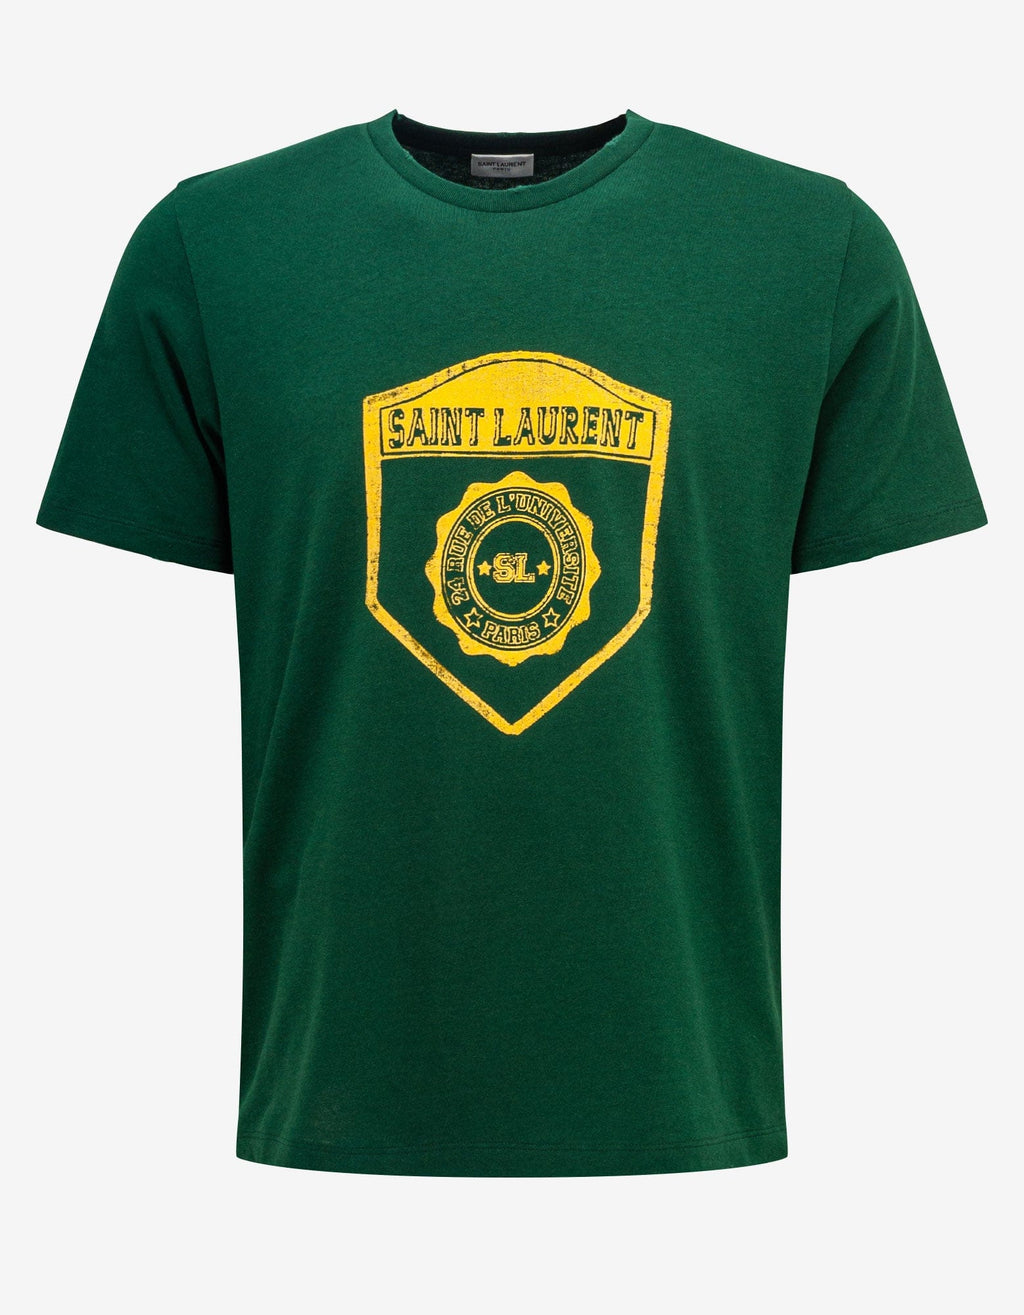 Saint Laurent Saint Laurent Green Graphic Print T-Shirt